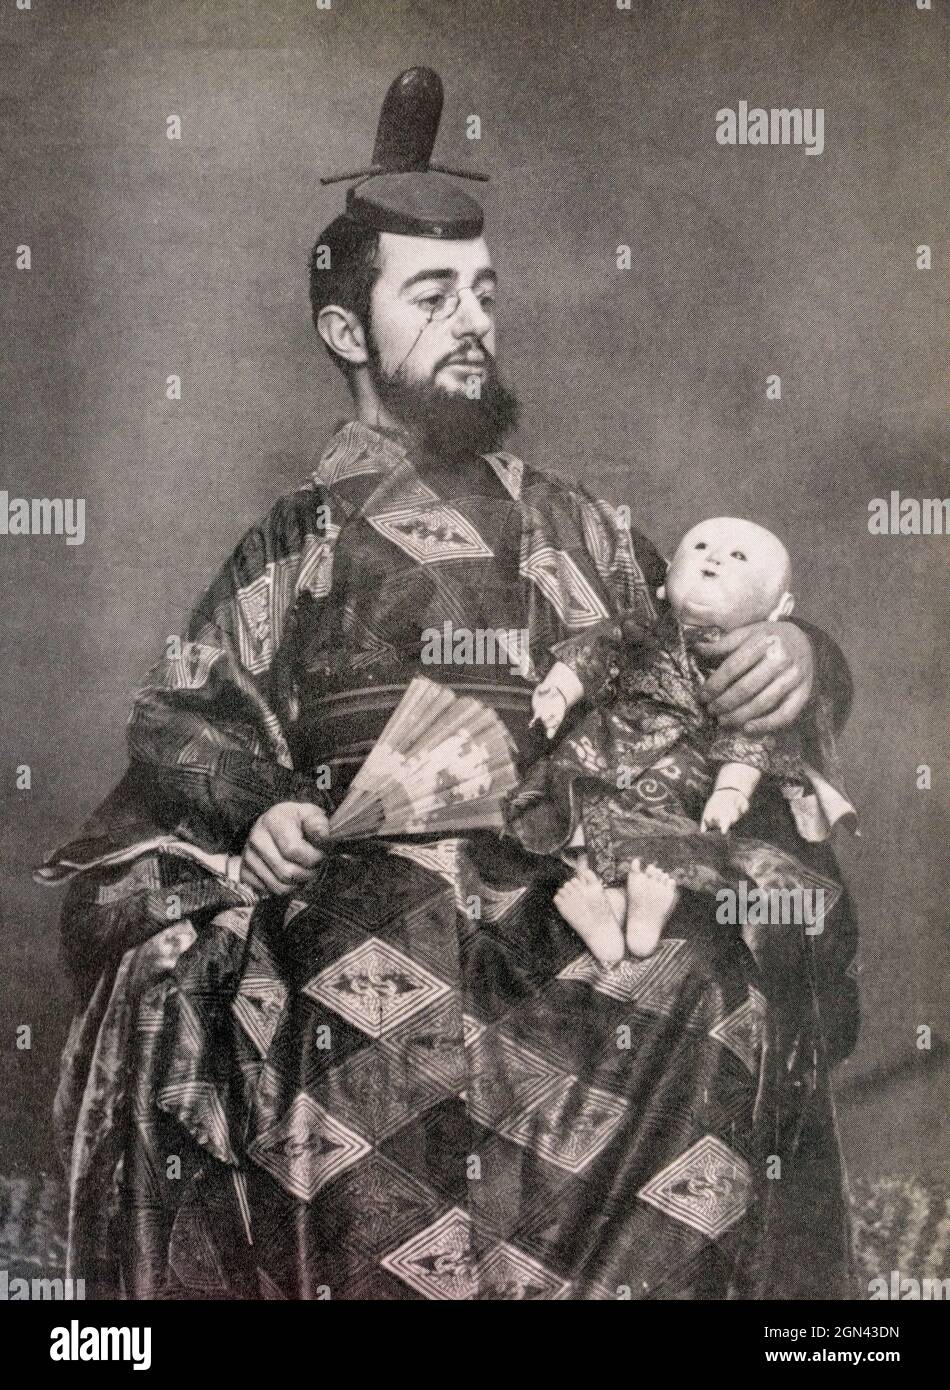 Toulouse-Lautrec kleidete sich als Japaner und hielt einen Fächer und eine Puppe. Nach einer Fotografie des französischen Fotografen Maurice Guibert, 1856 - 1922, ein Freund von Toulouse-Lautrec. Henri Toulouse-Lautrec, 1864 - 1901, französischer Künstler nach dem Impressionismus. Stockfoto